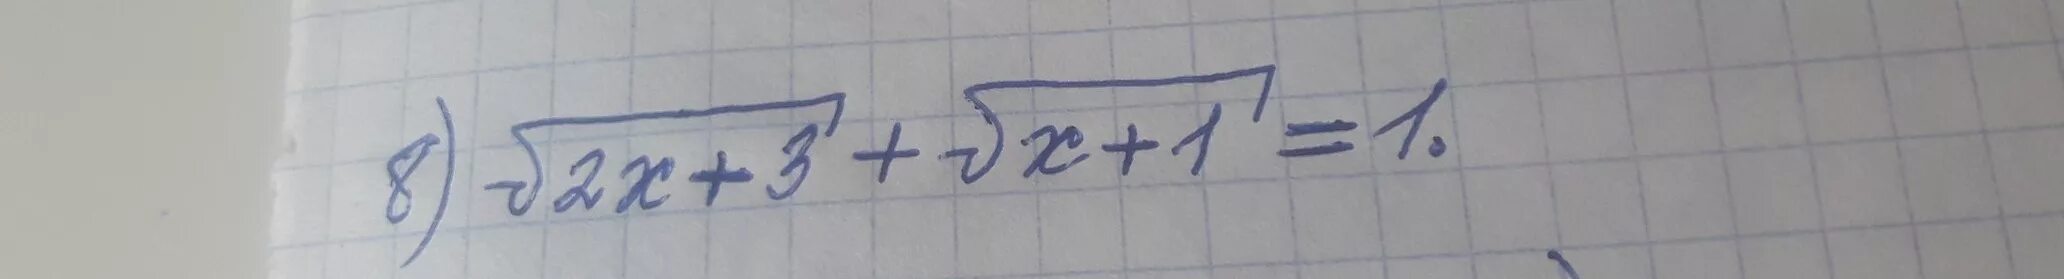 1/Корень х. Корень из х-2 - корень из 2х-1. Корень из 3 2х корень из 1-х 1. Корень из 3х-1=2.